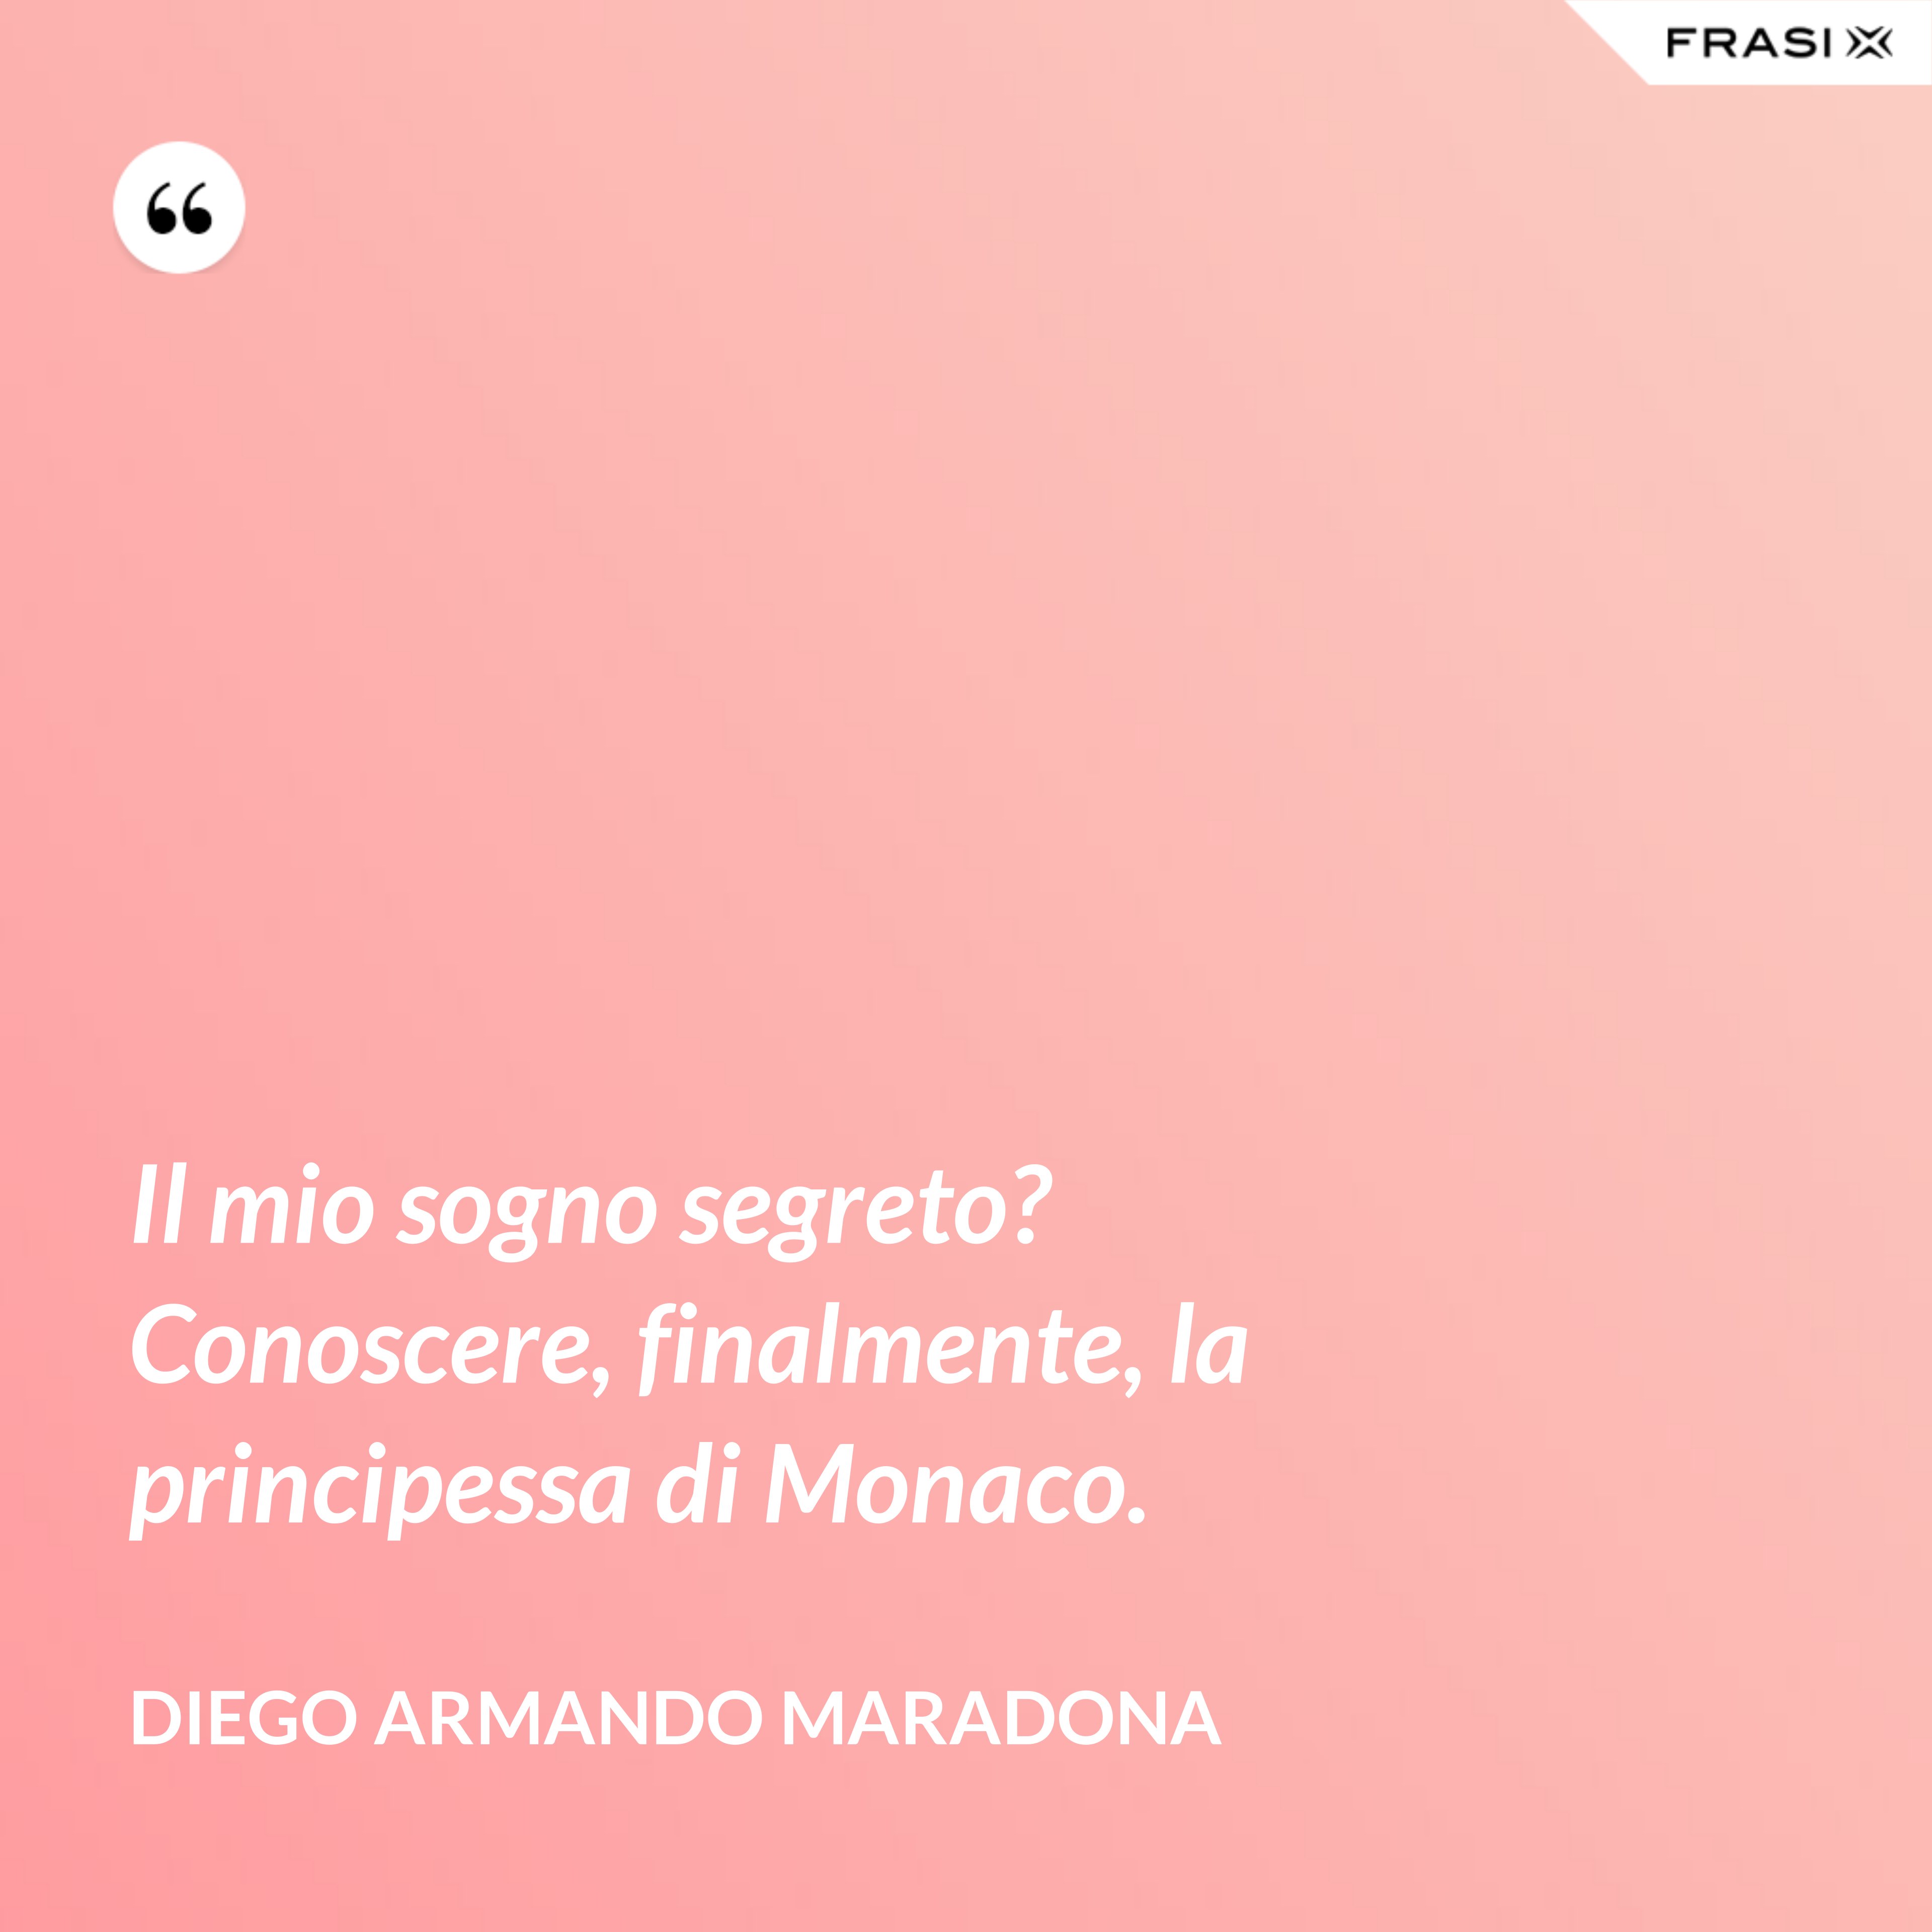 Il mio sogno segreto? Conoscere, finalmente, la principessa di Monaco. - Diego Armando Maradona